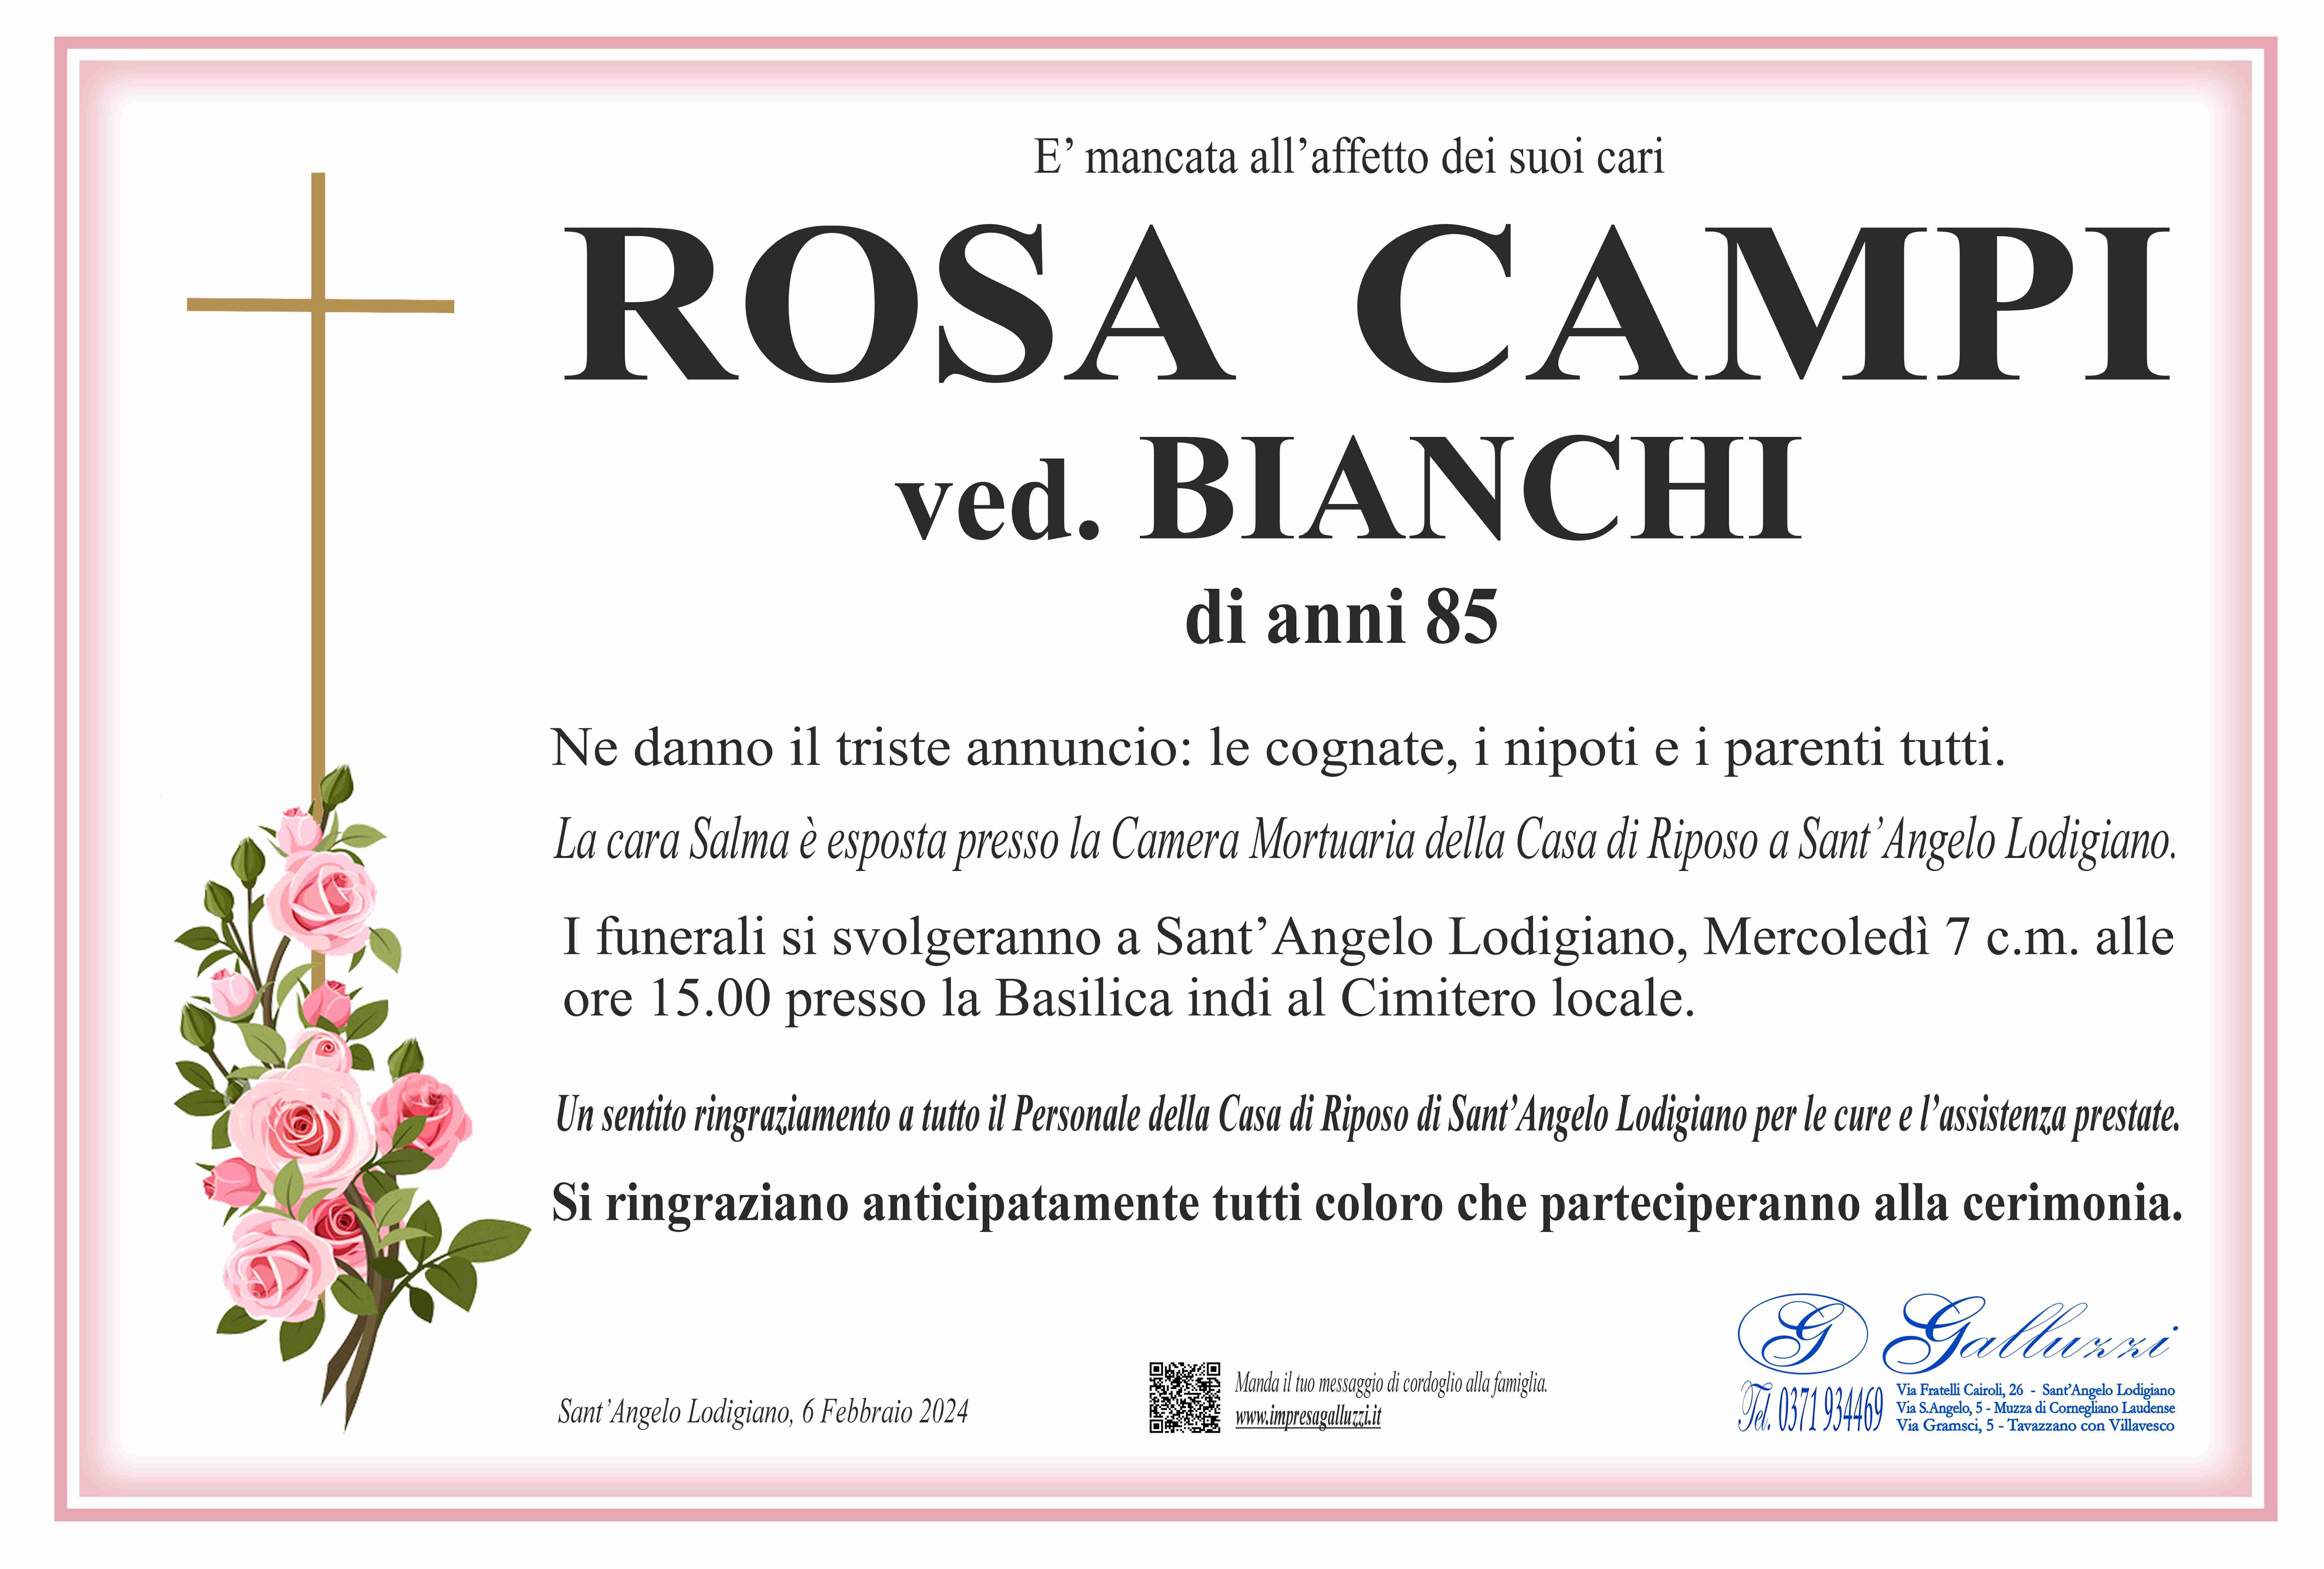 Rosa Campi